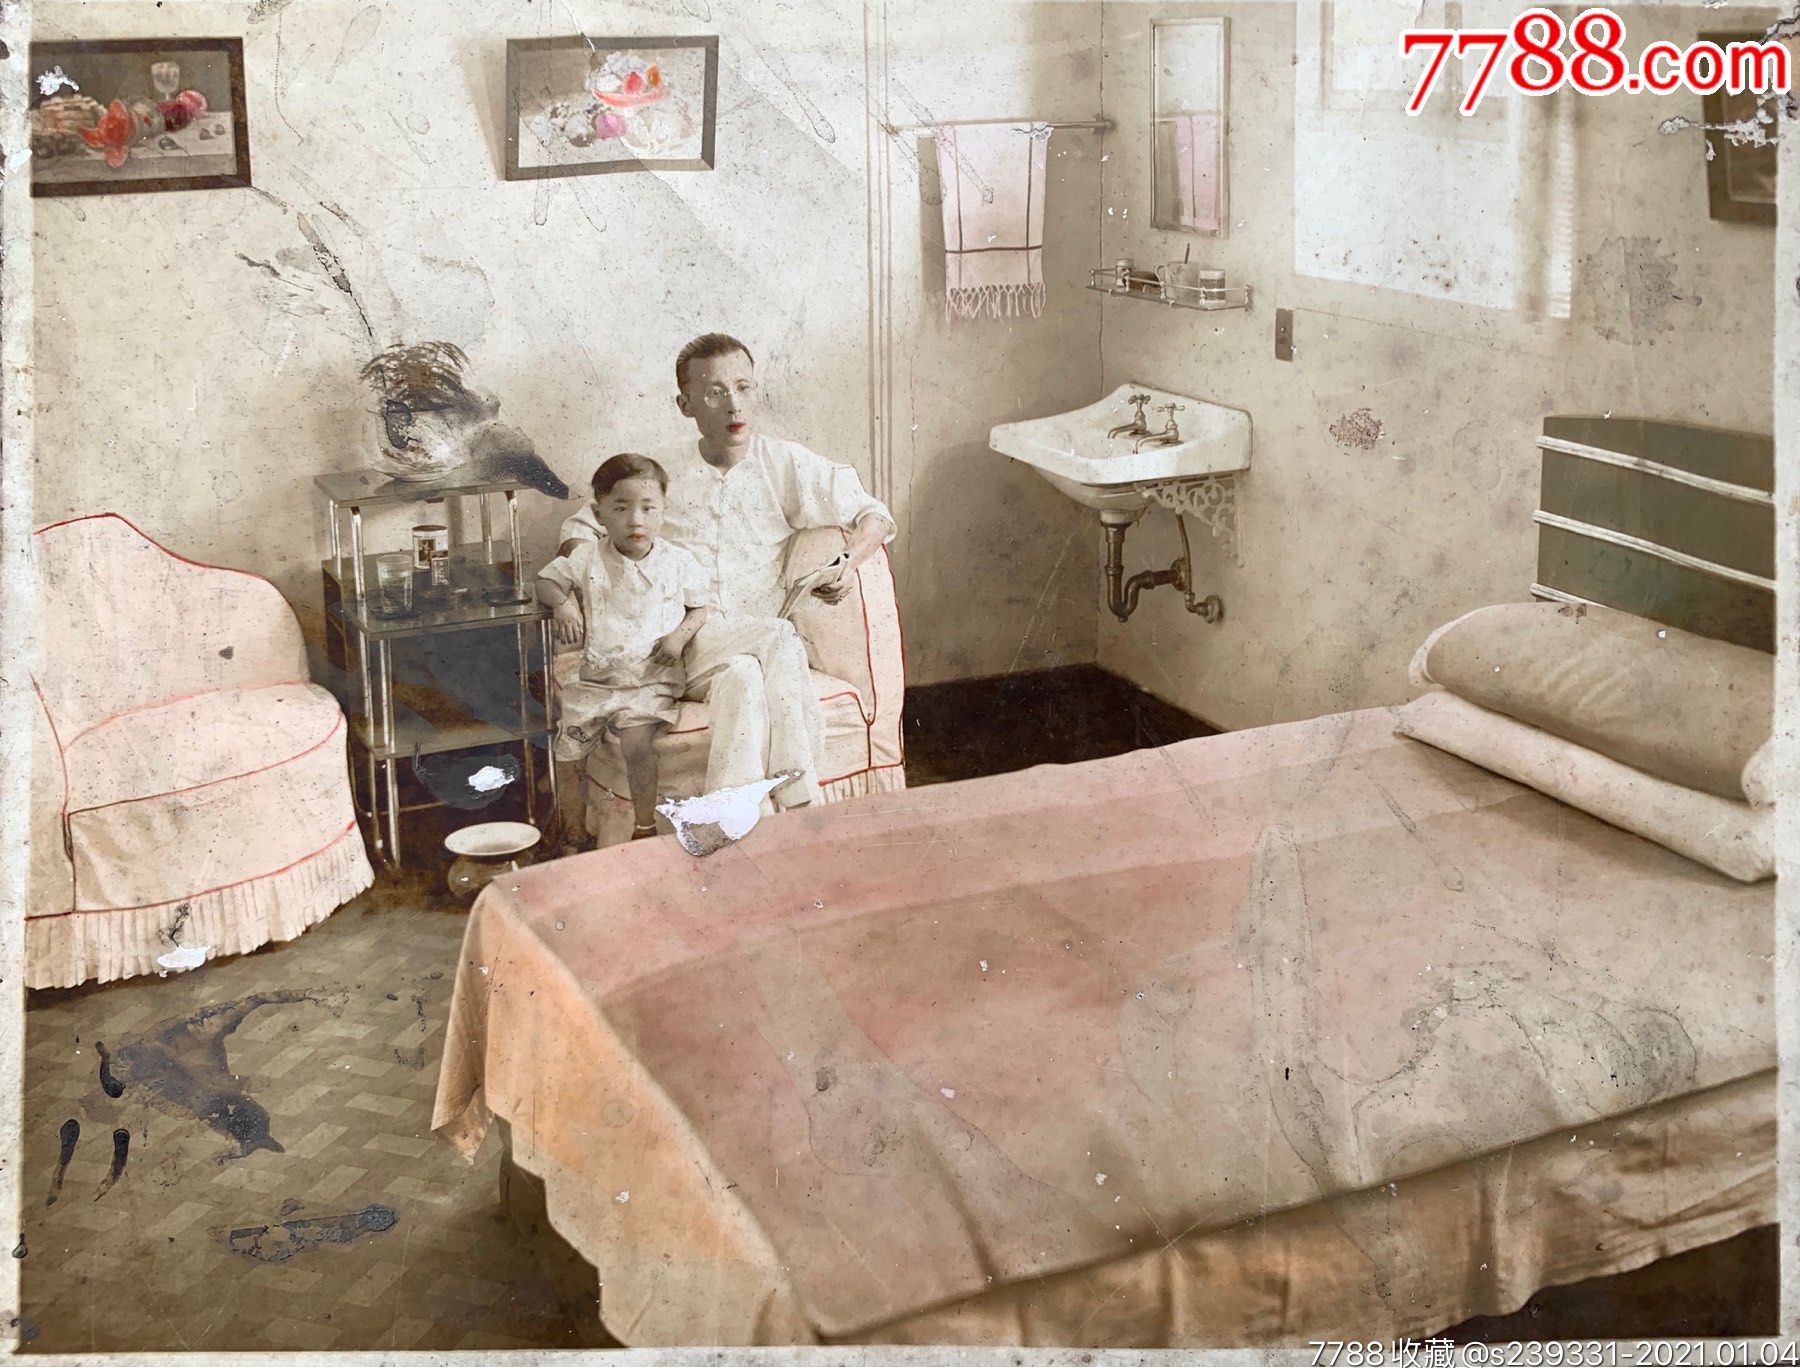 近代室内装修史料民国时期上海某相馆摄制上流社会父子于豪华西式卧室